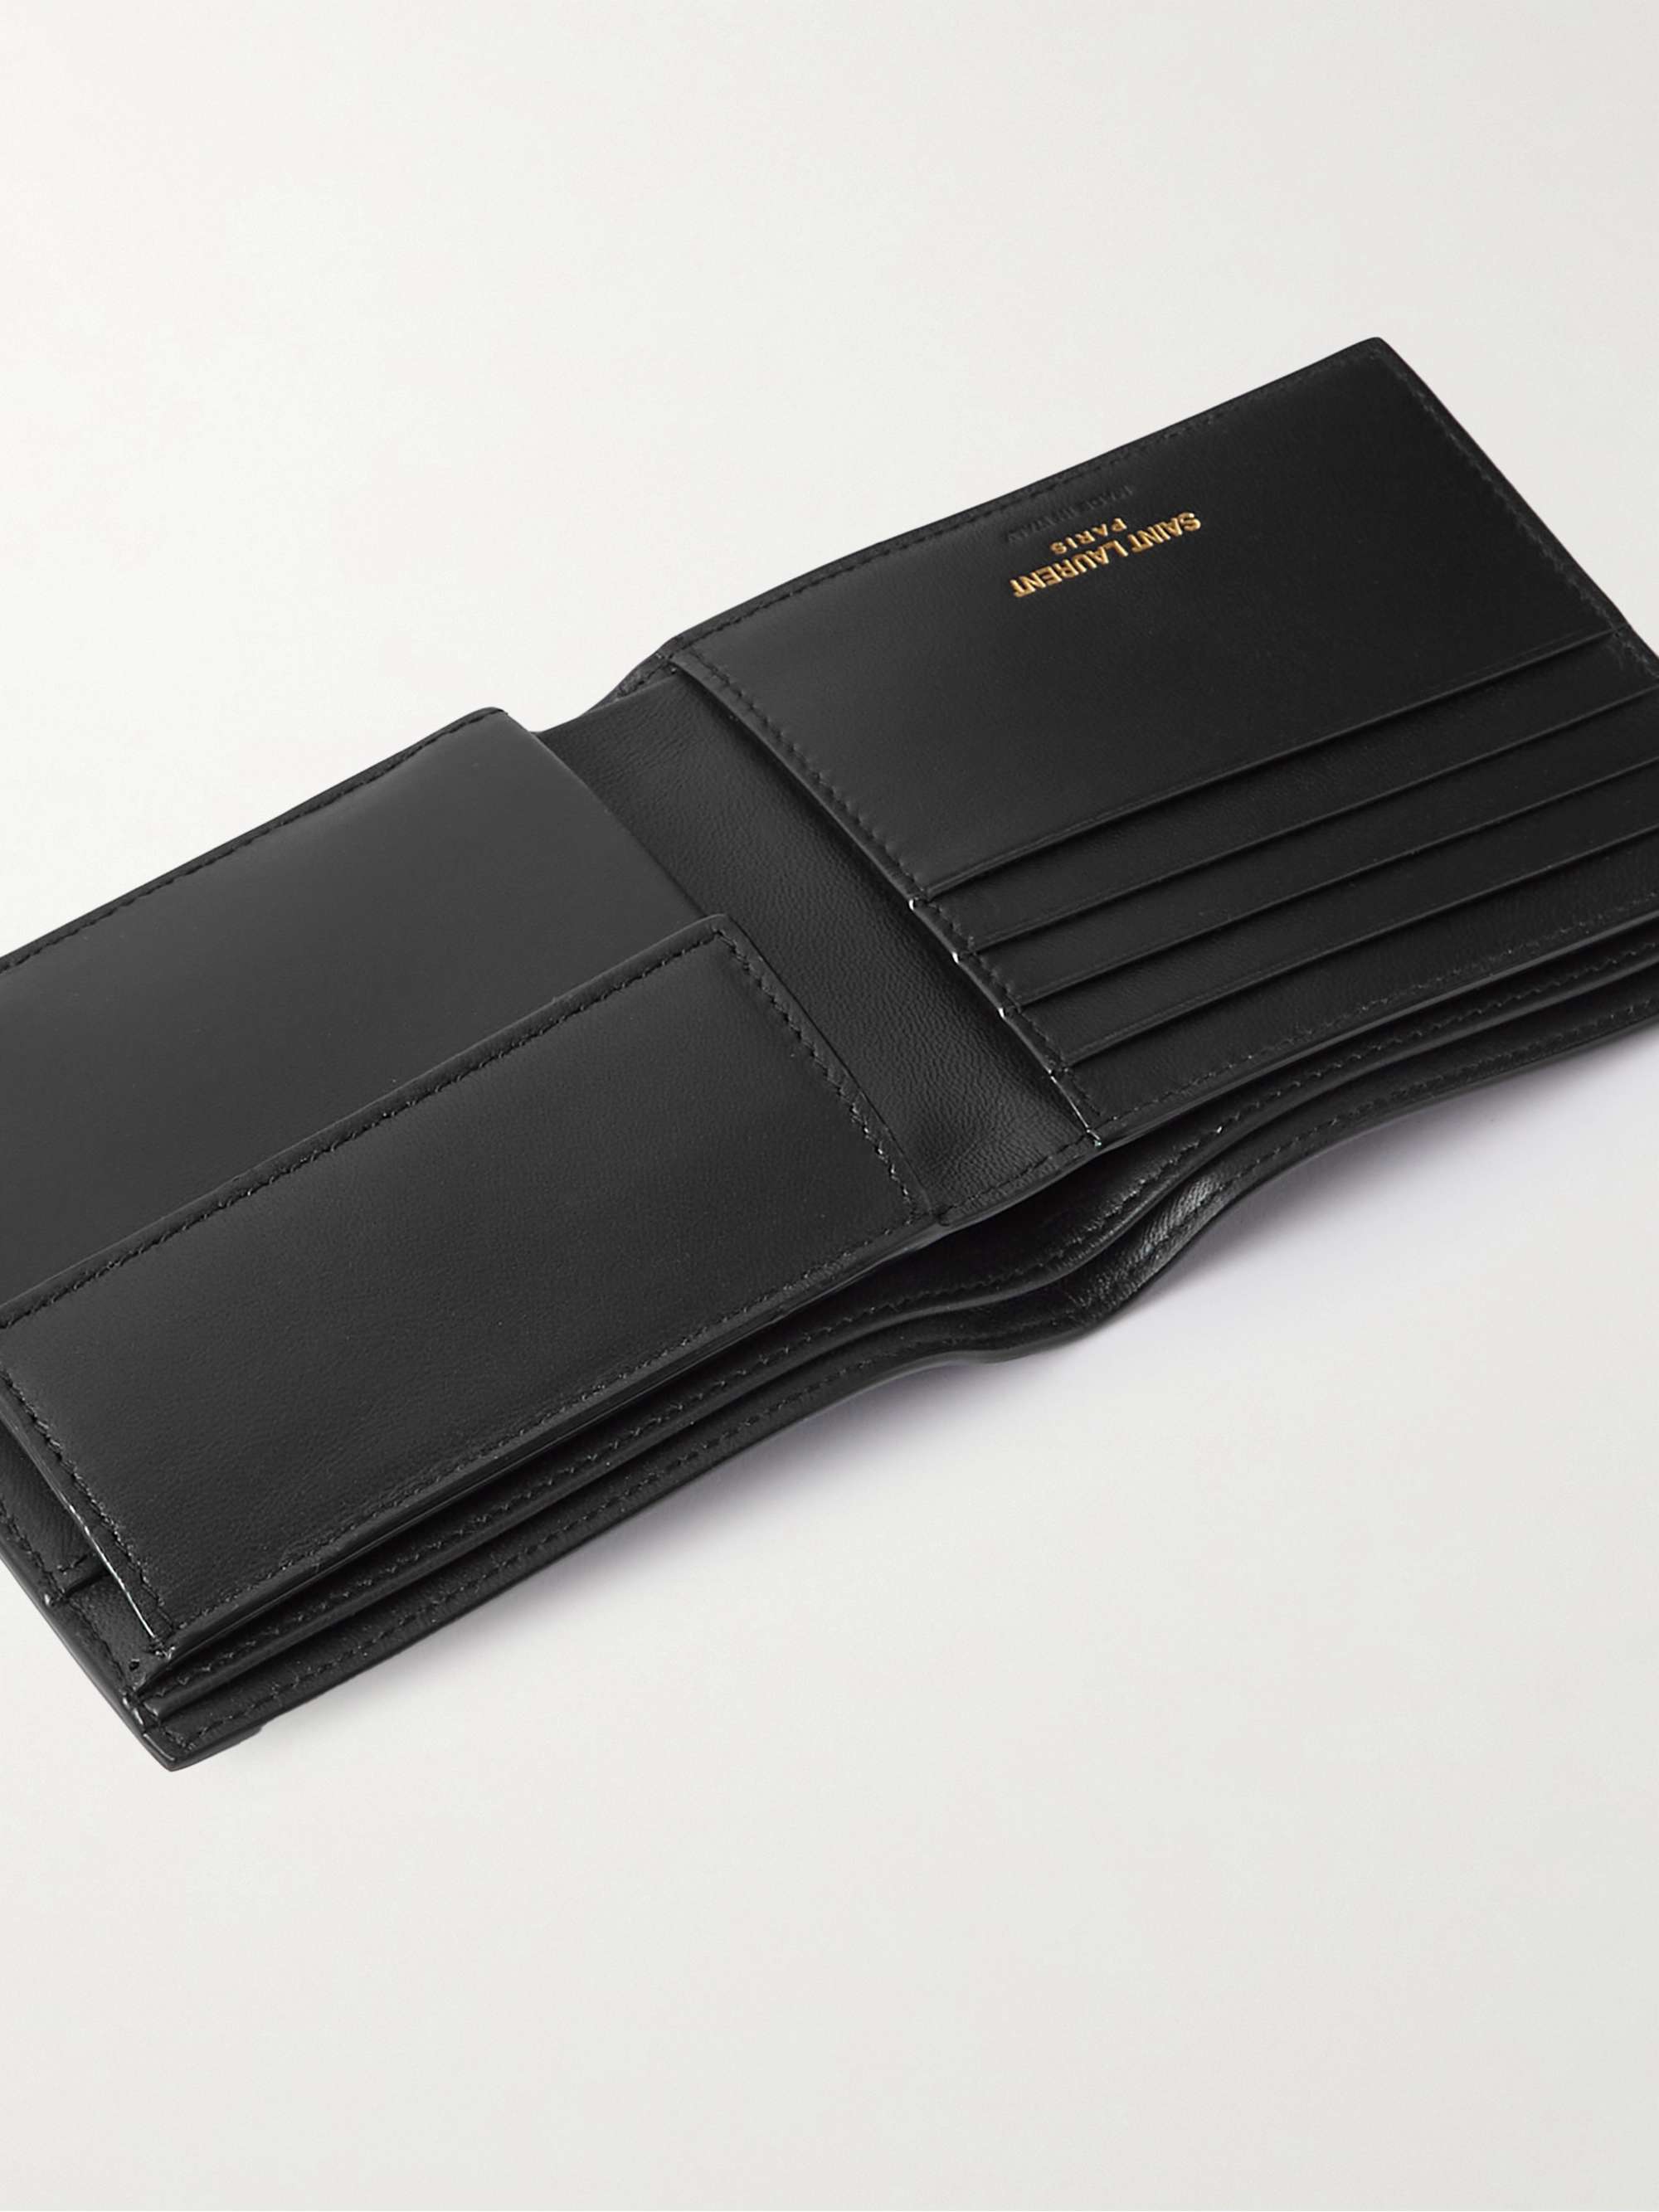 Gray Intrecciato Leather Billfold Wallet | BOTTEGA VENETA | MR PORTER